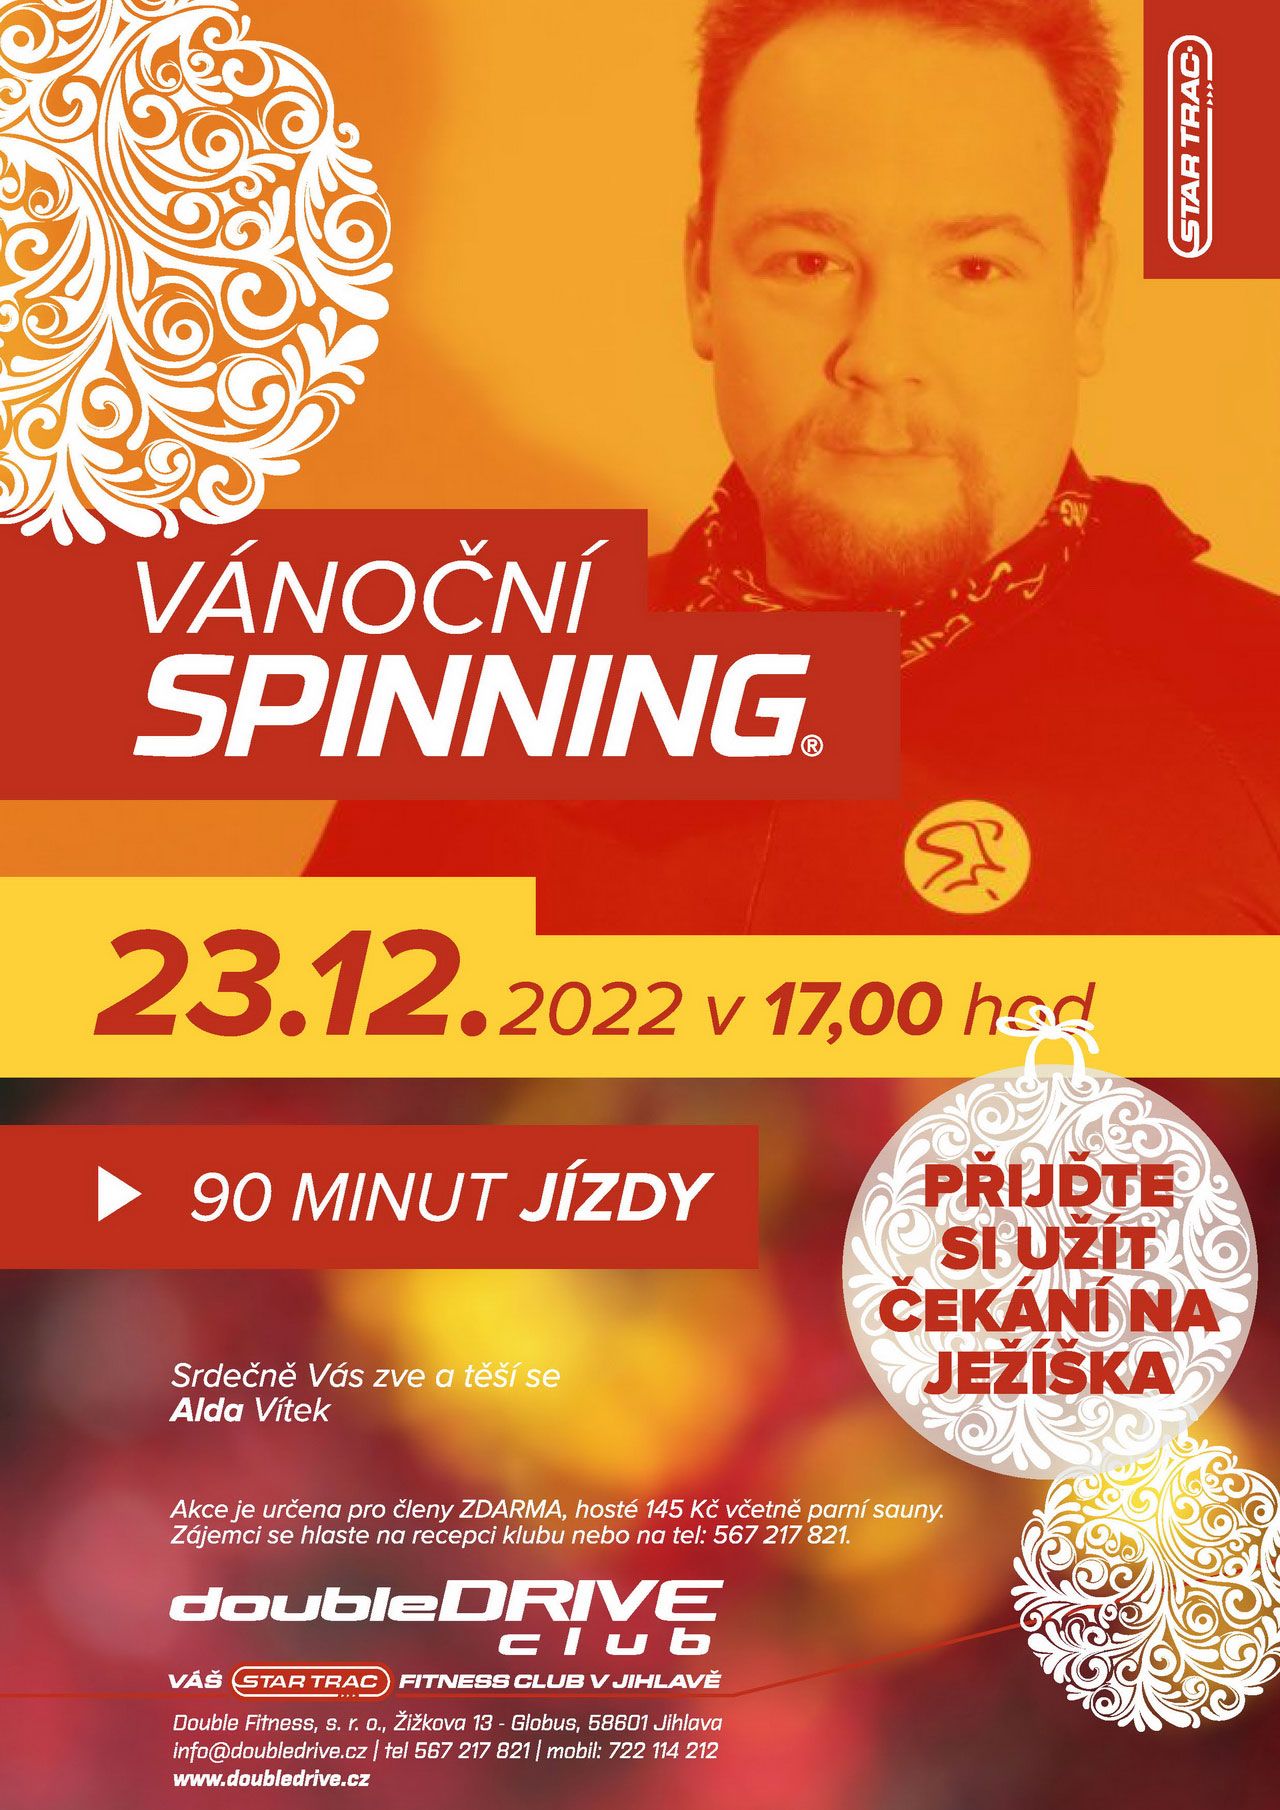 Ddc 20221223 Spinn Re